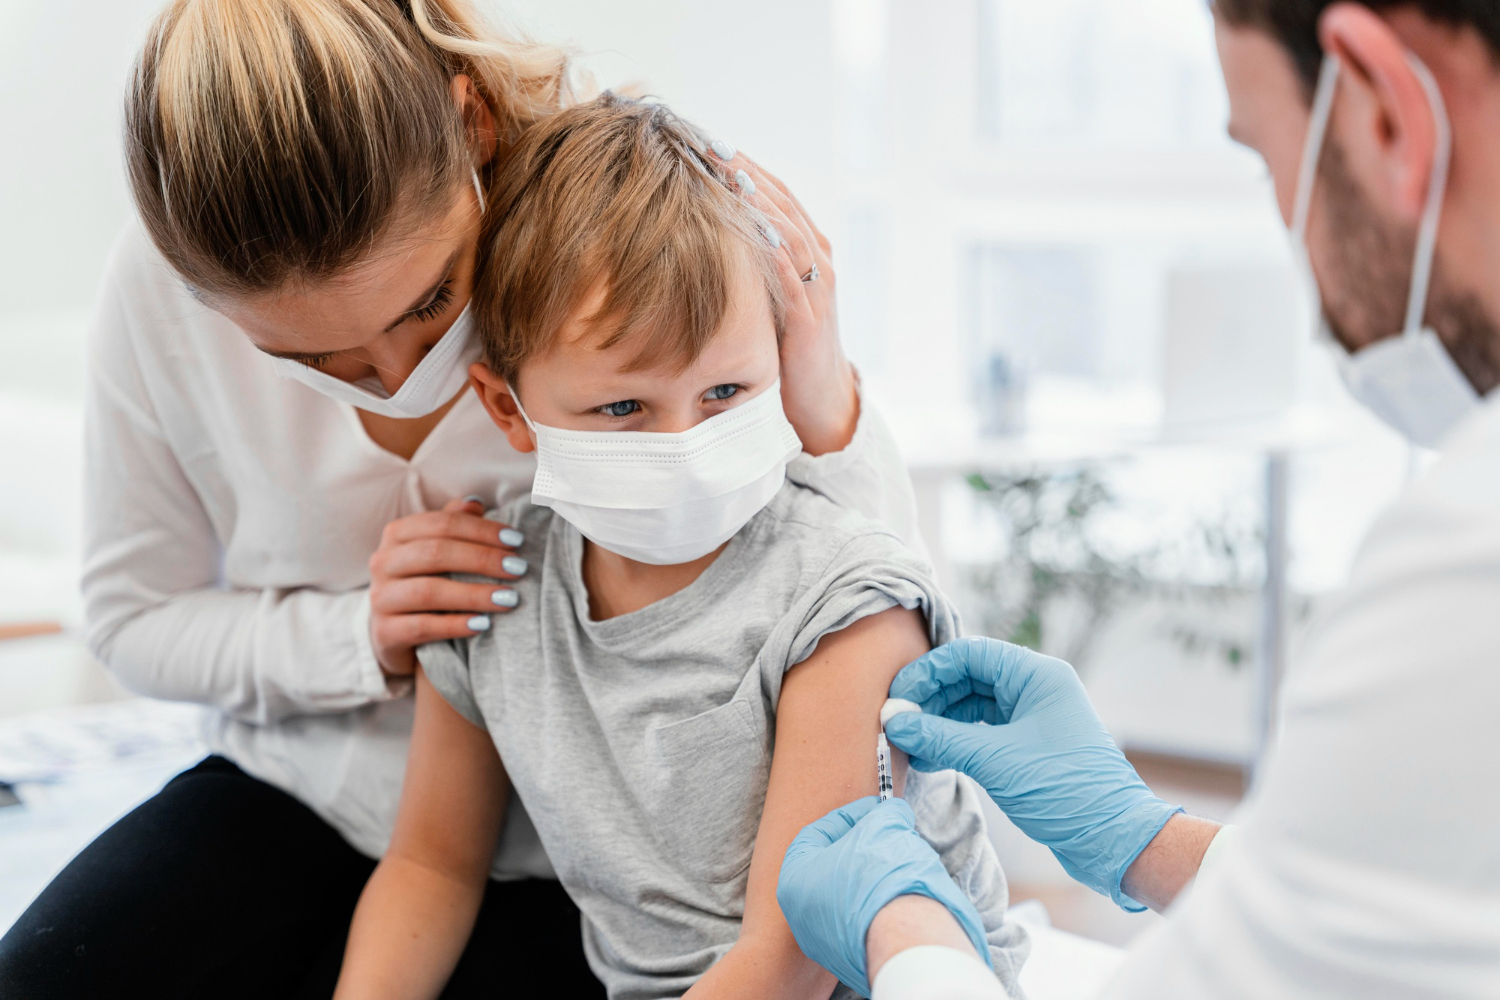 Børne vacciner: Hvilke, hvorfor mv.?